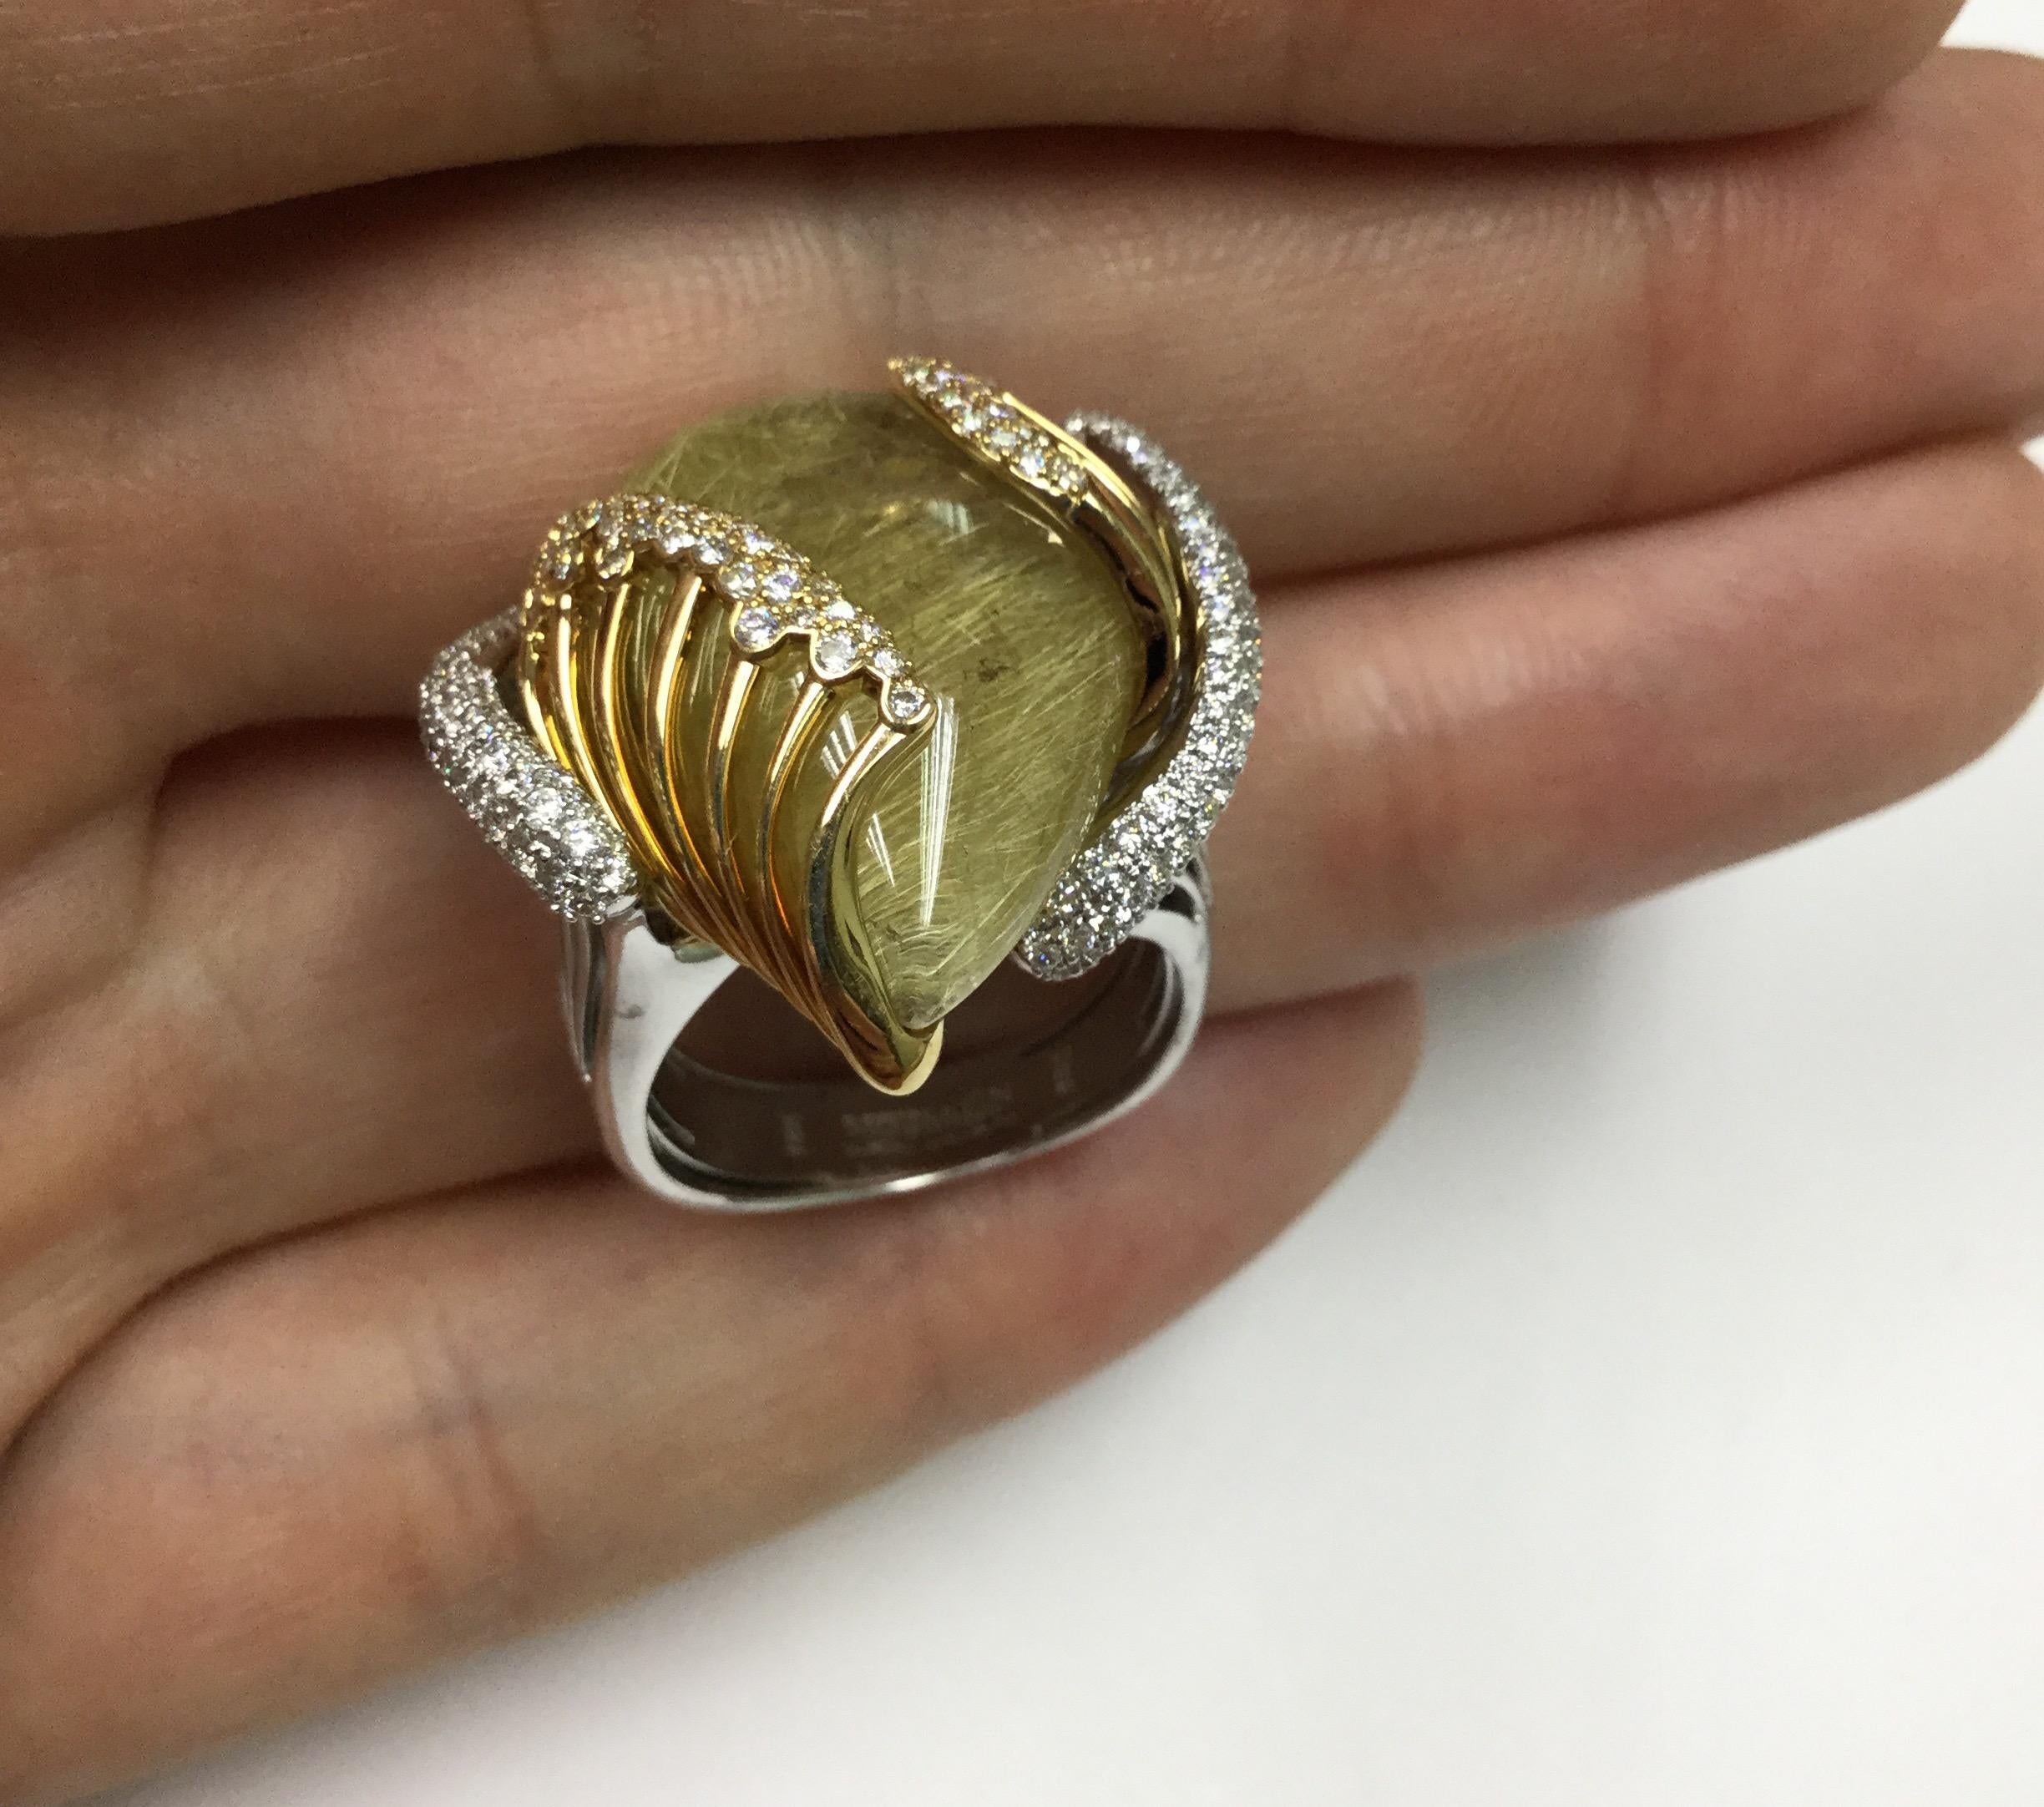 Wellenförmiger, schöner Rutilquarz-Ring. Ein Karat Diamanten. Verkleinerungsgalerie innen.

33 mm x 25 mm x 25 mm
17.99 gms
GRÖSSE:  7 3/4 US      55 7/8 EUR